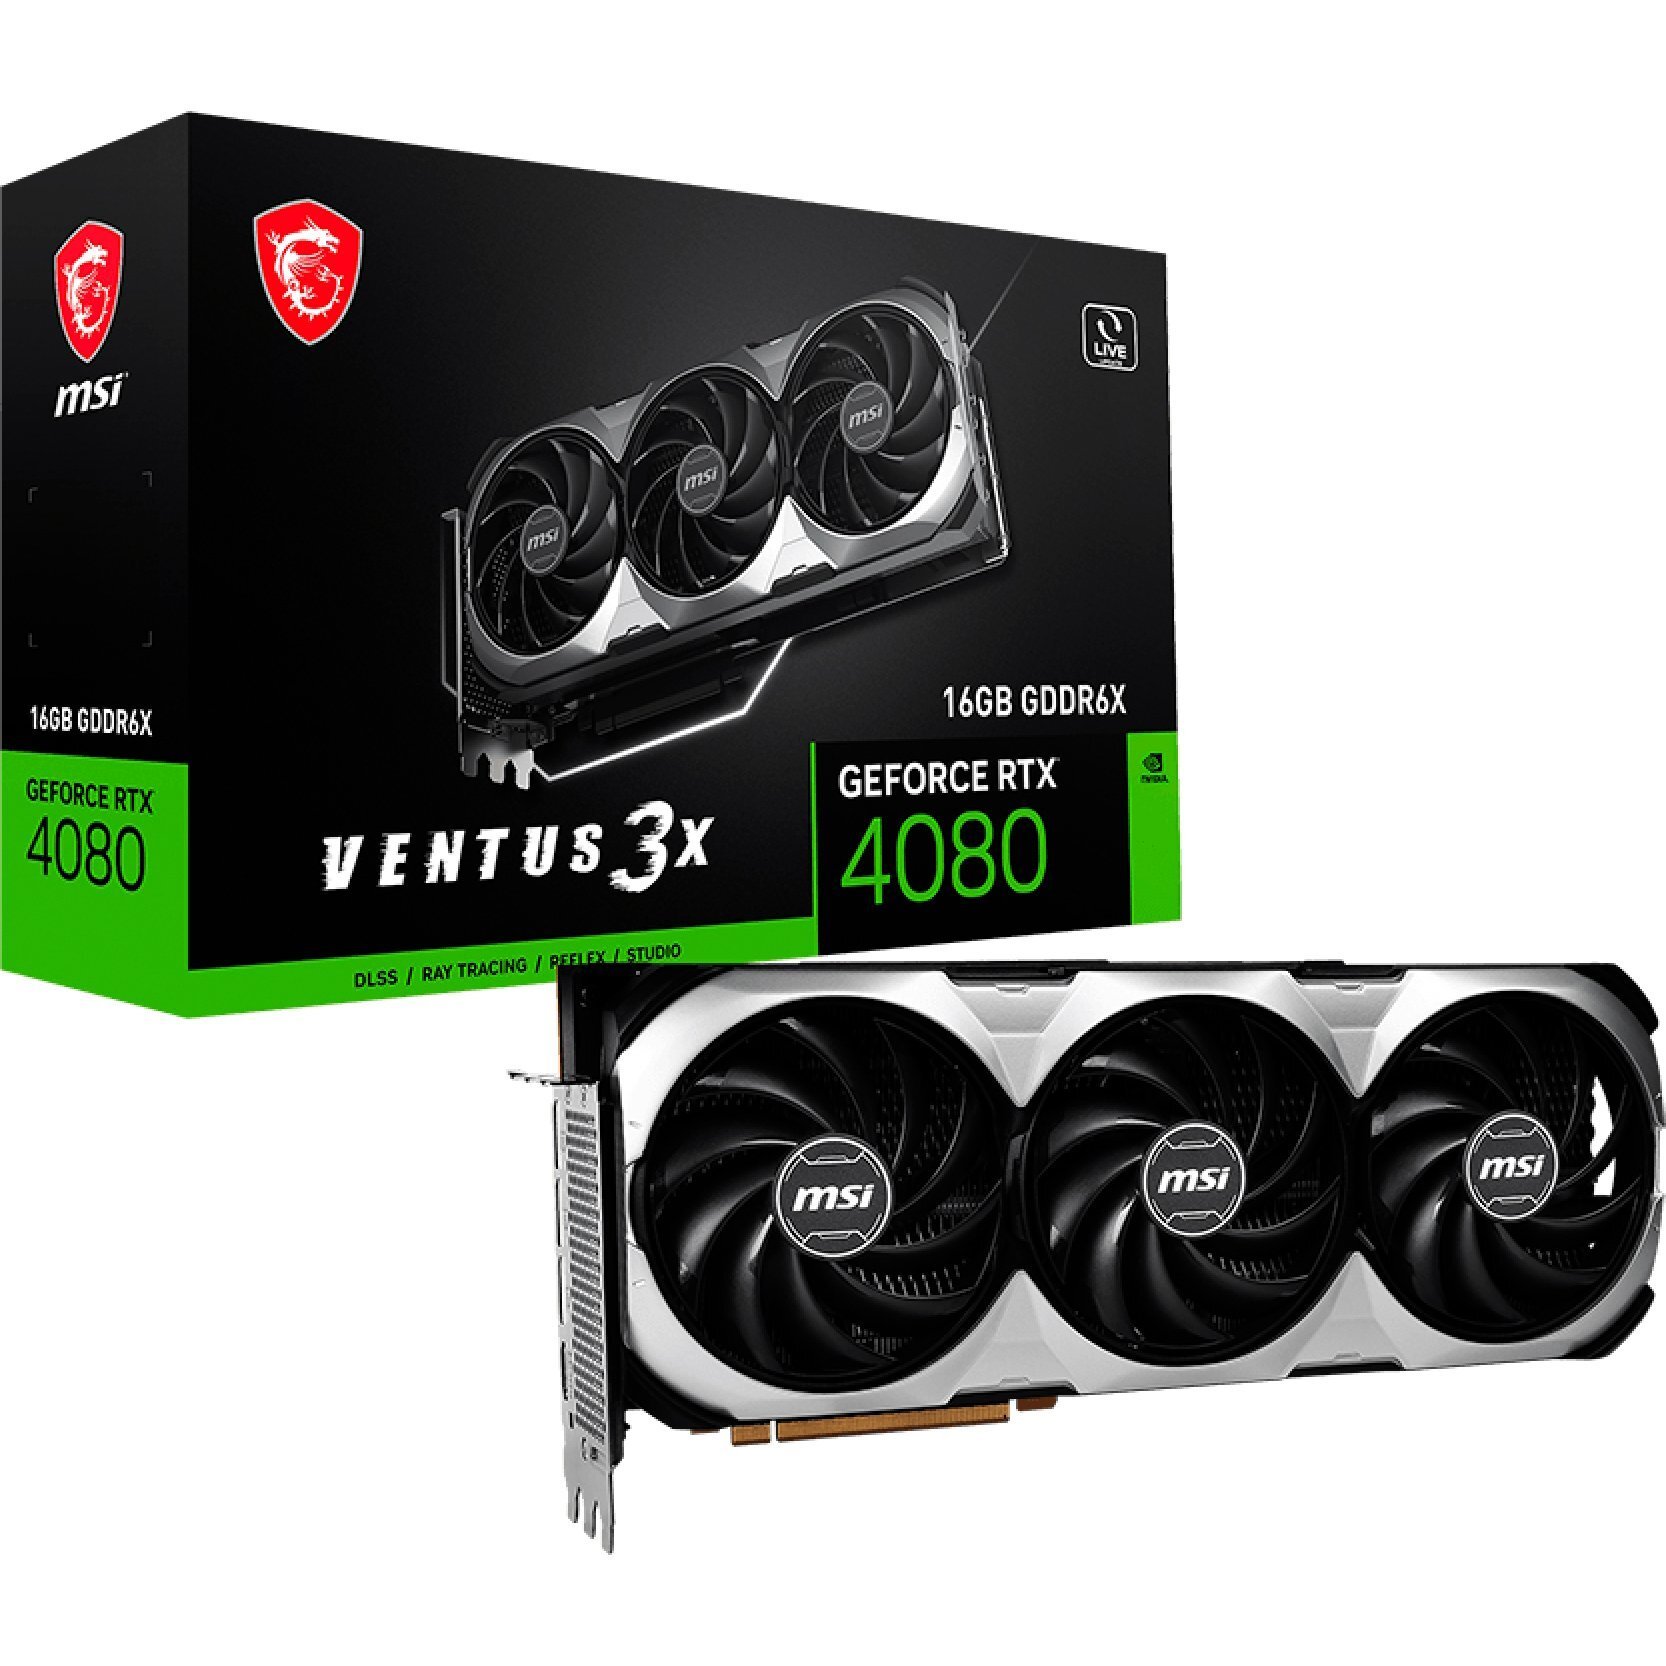 Видеокарта MSI GeForce RTX 4080 16GB GDDR6X VENTUS 3X (912-V511-211) фото 1